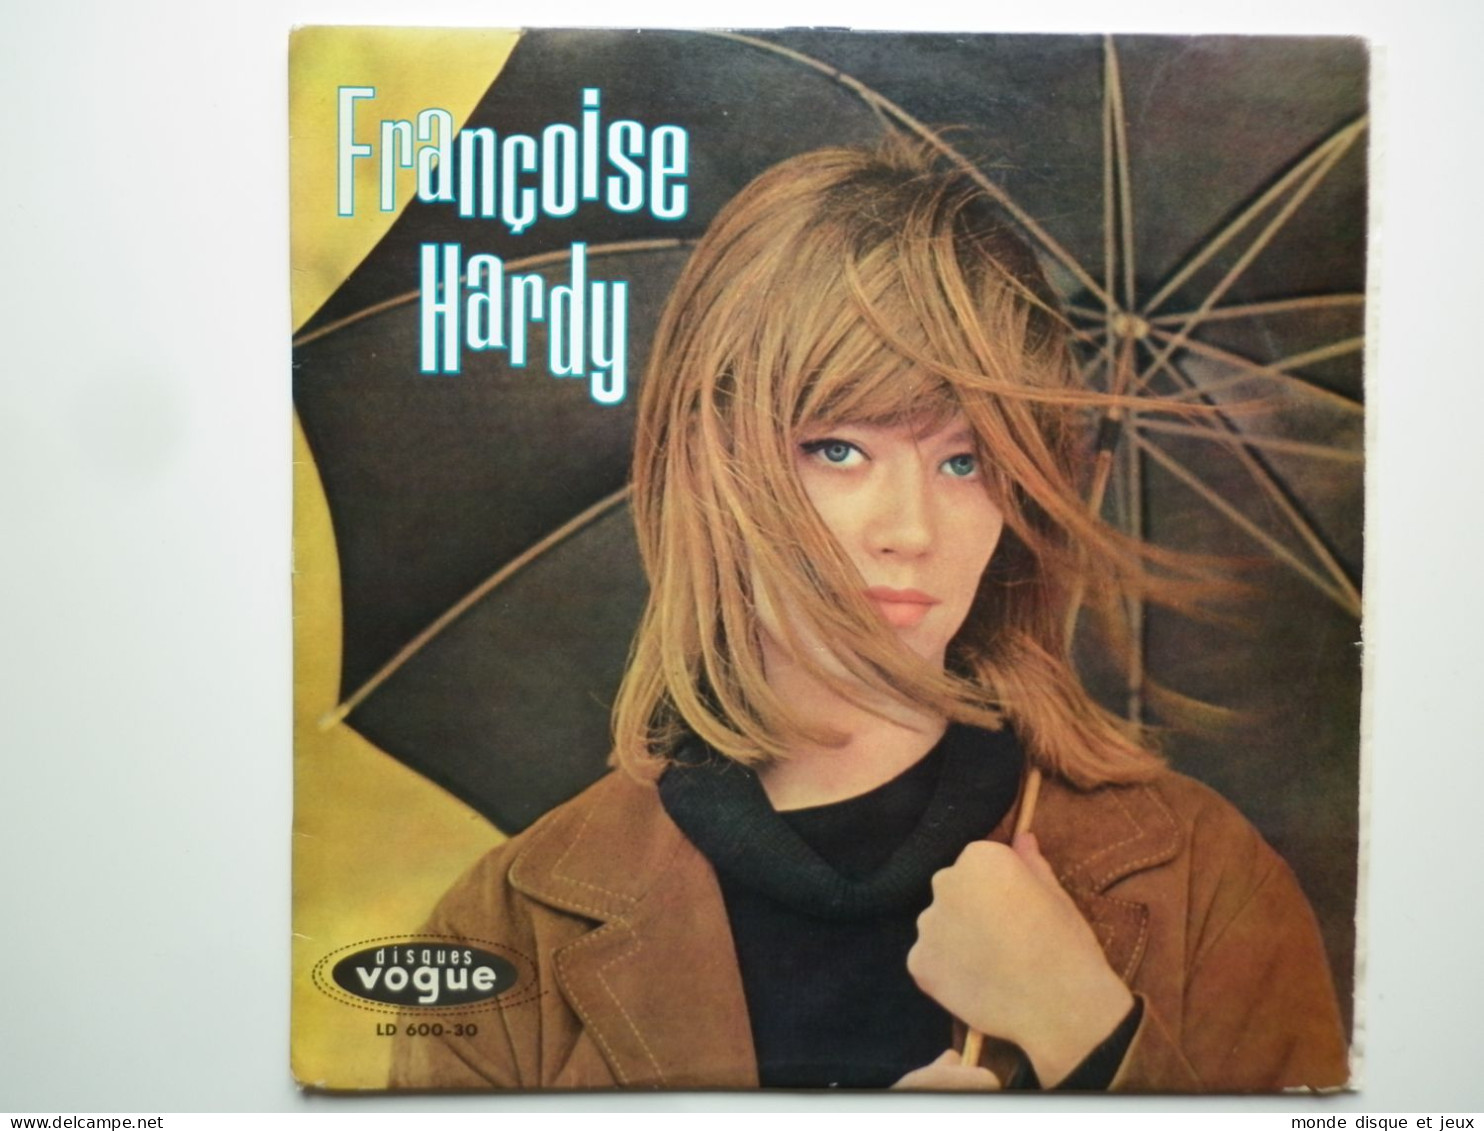 Françoise Hardy Album 33Tours Vinyle Tous Les Garçons Et Les Filles - Sonstige - Franz. Chansons